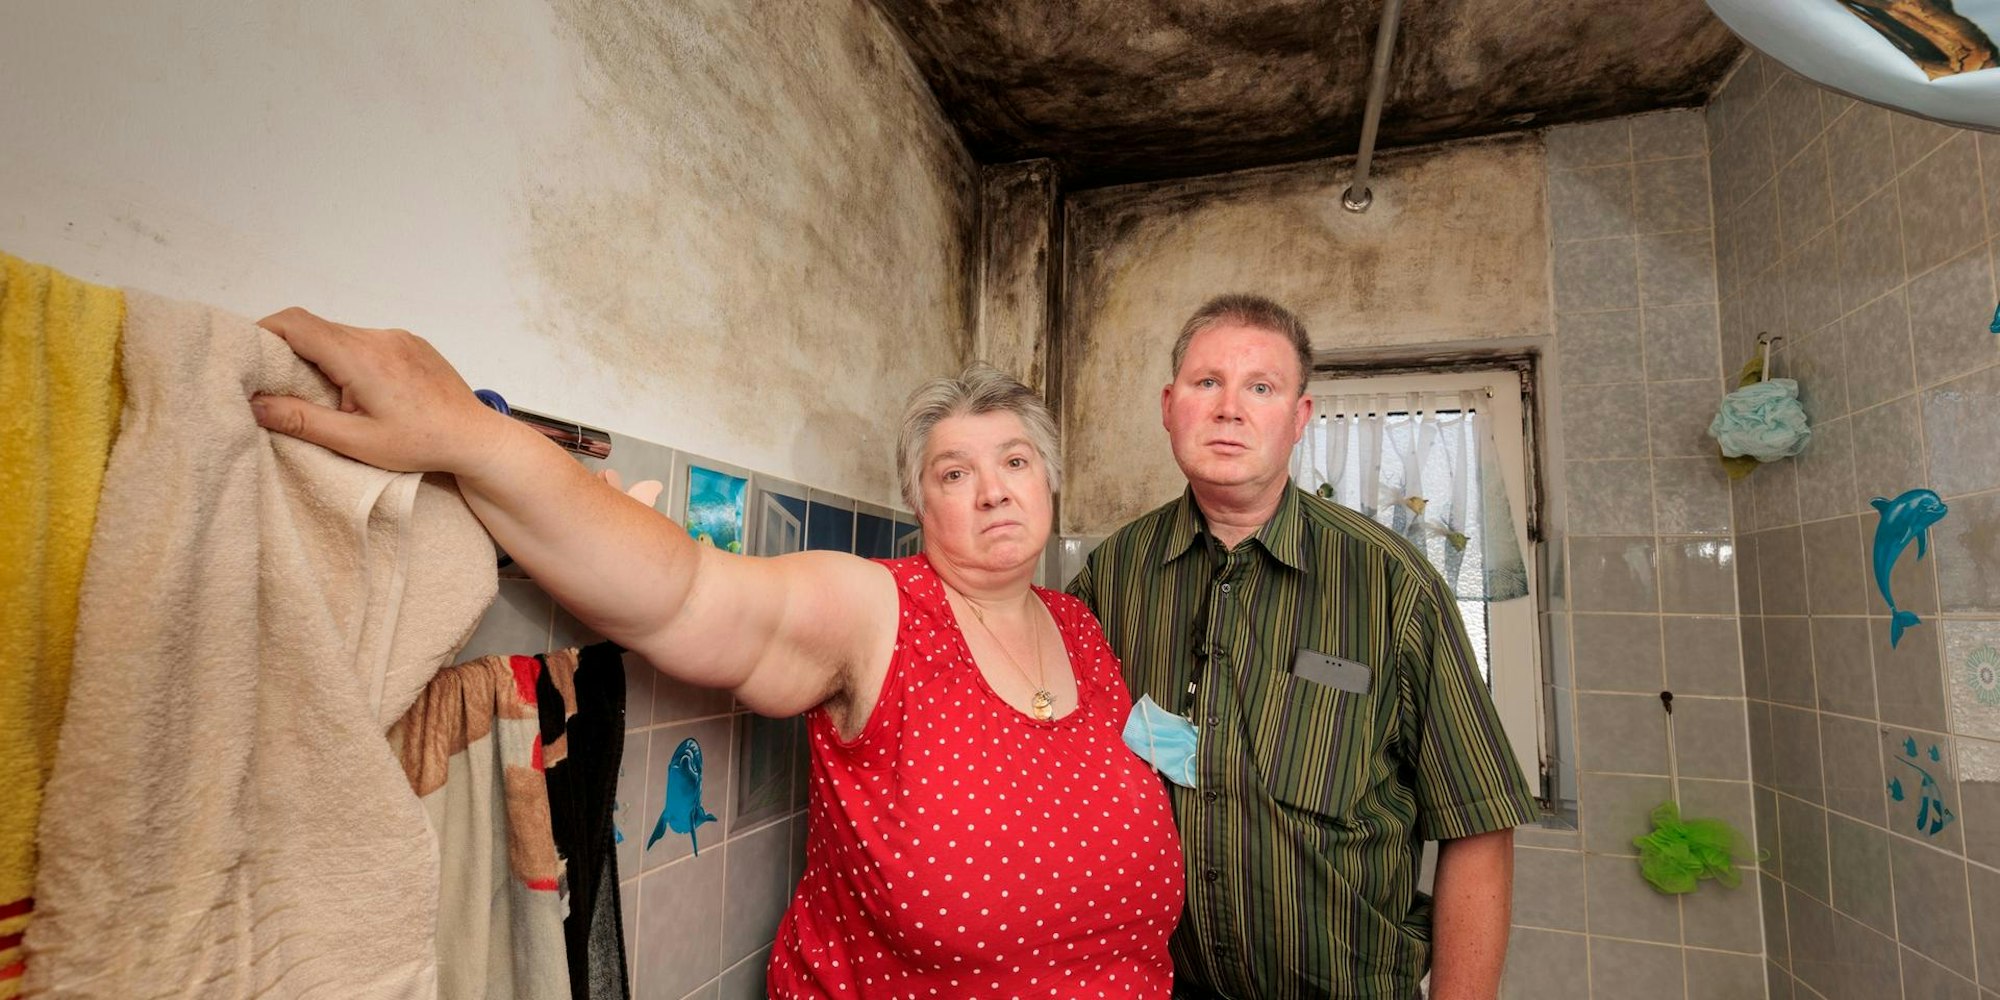 Carmen Seils und Dirk Beyer leben seit 12 Jahren in einer immer wieder aufs Neue verschimmelten Wohnung.